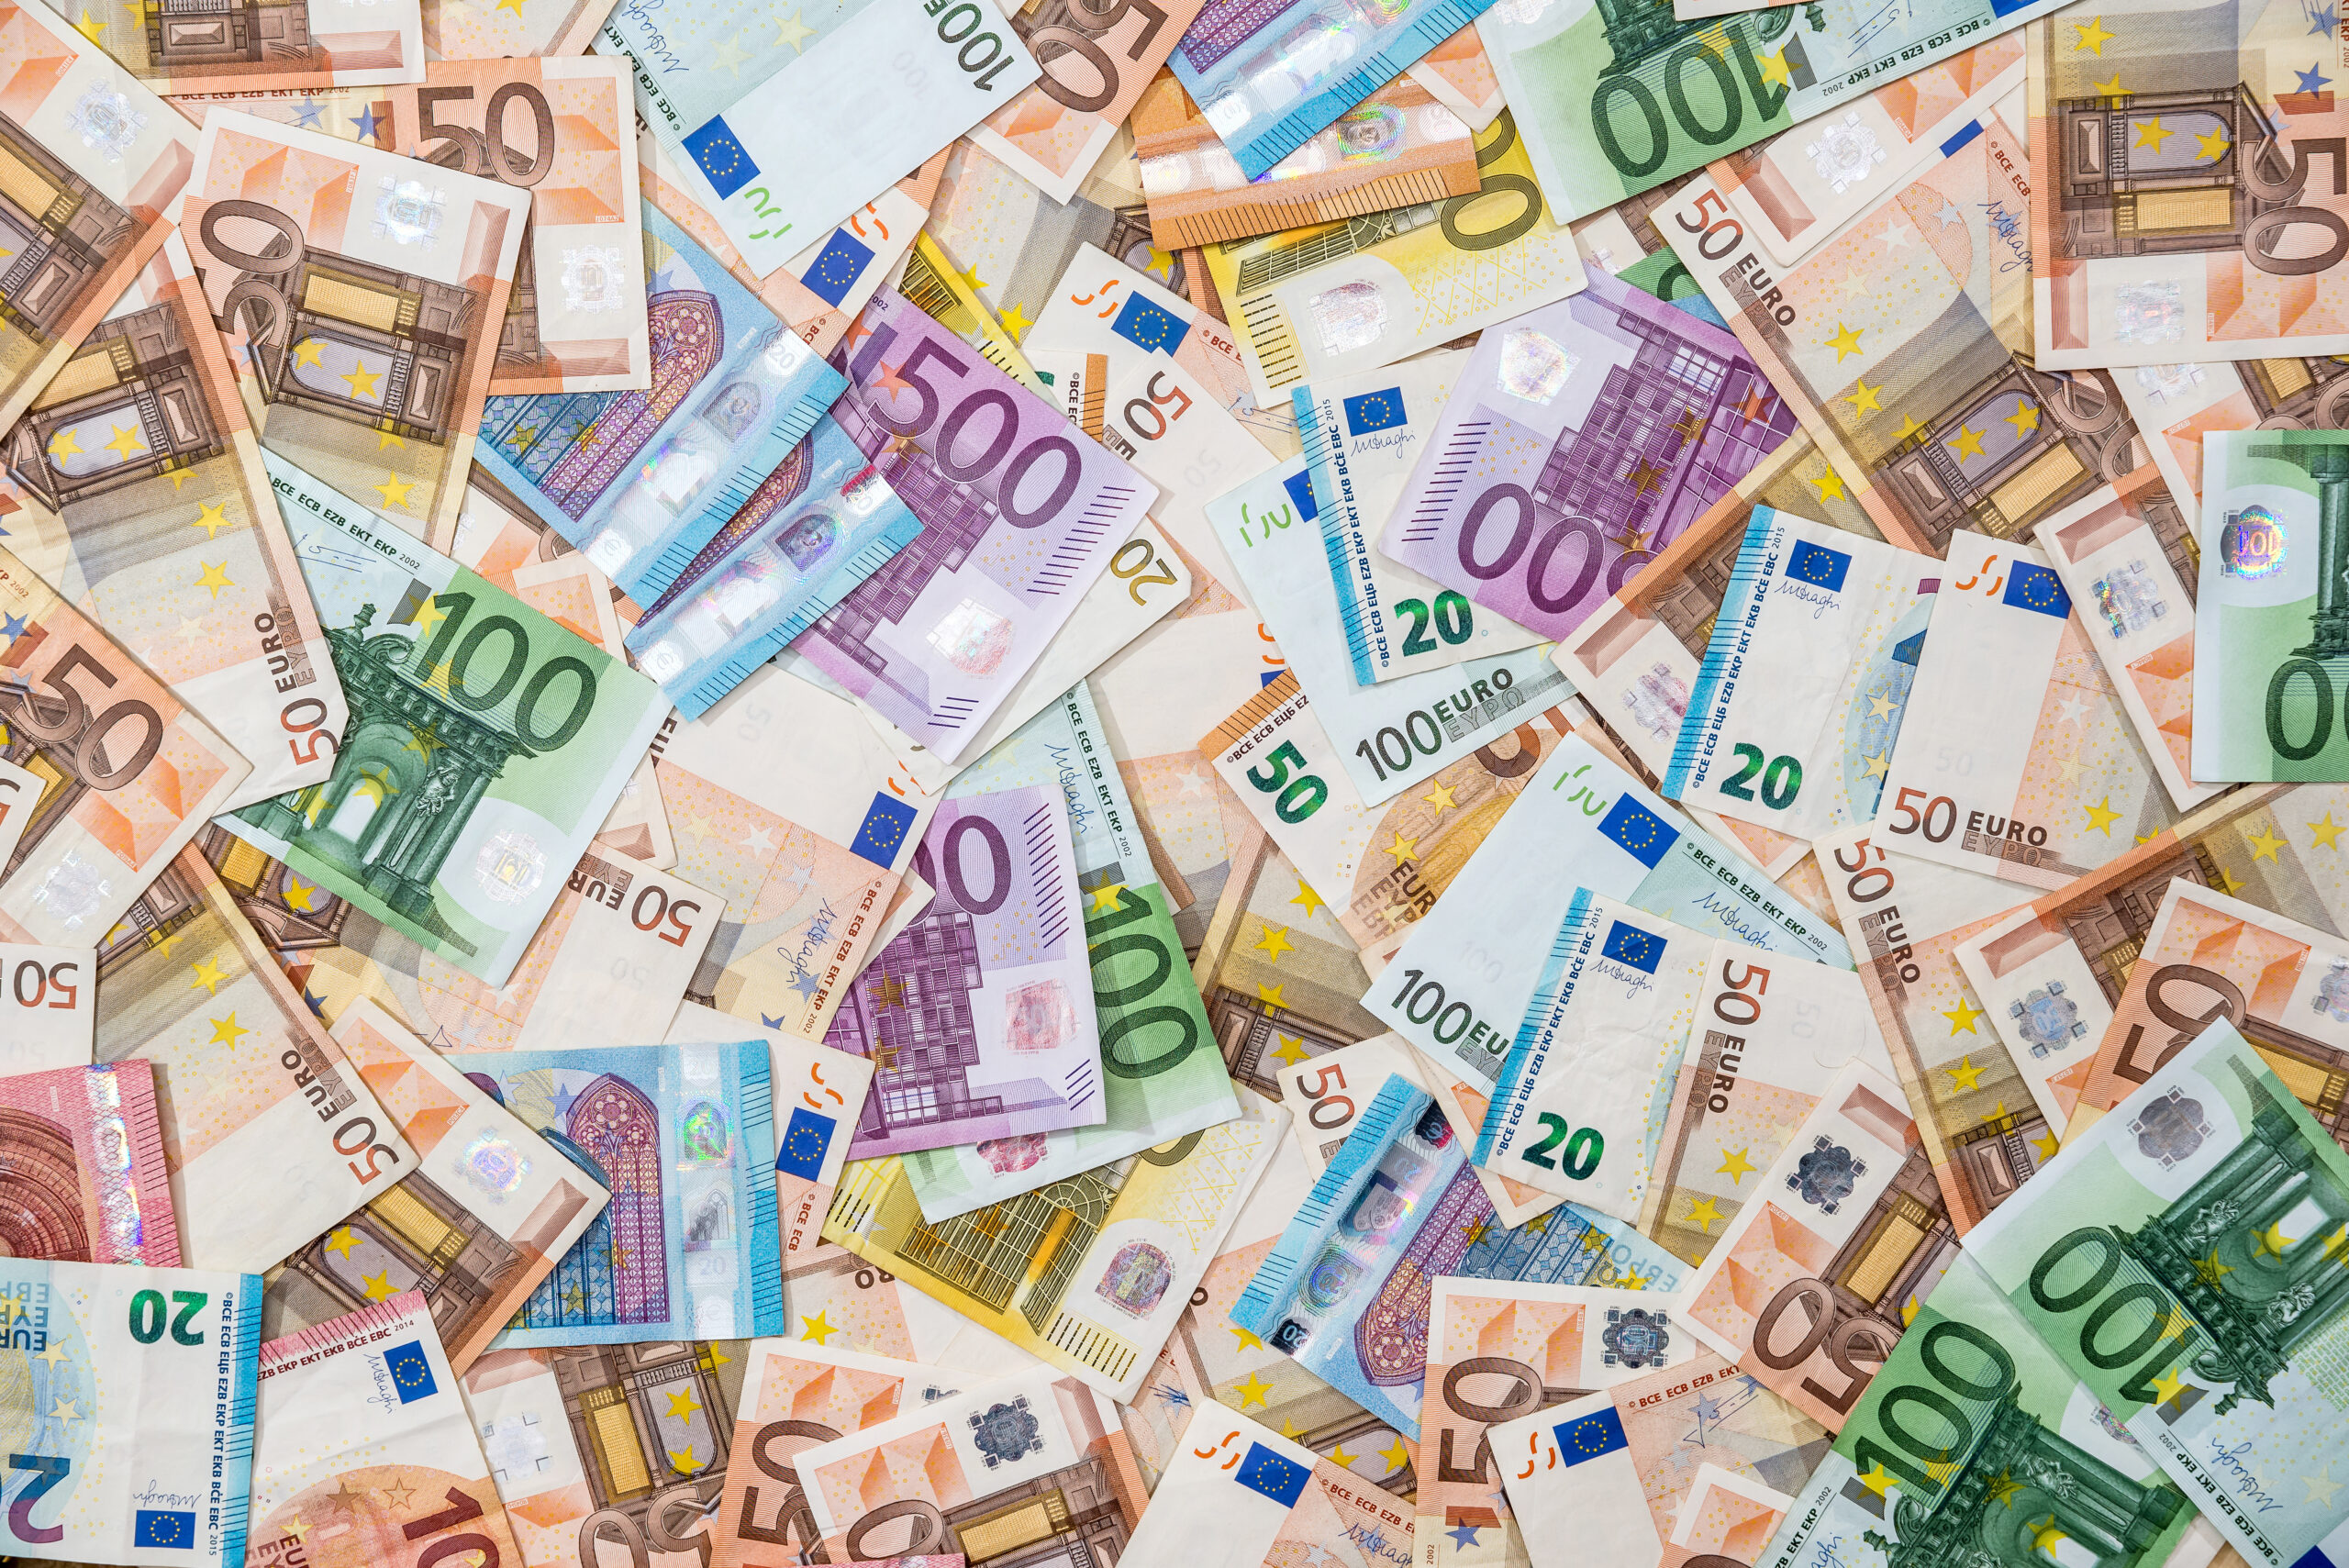 Aumenti in busta paga per marzo sino a 1.900 euro. A chi riguarda